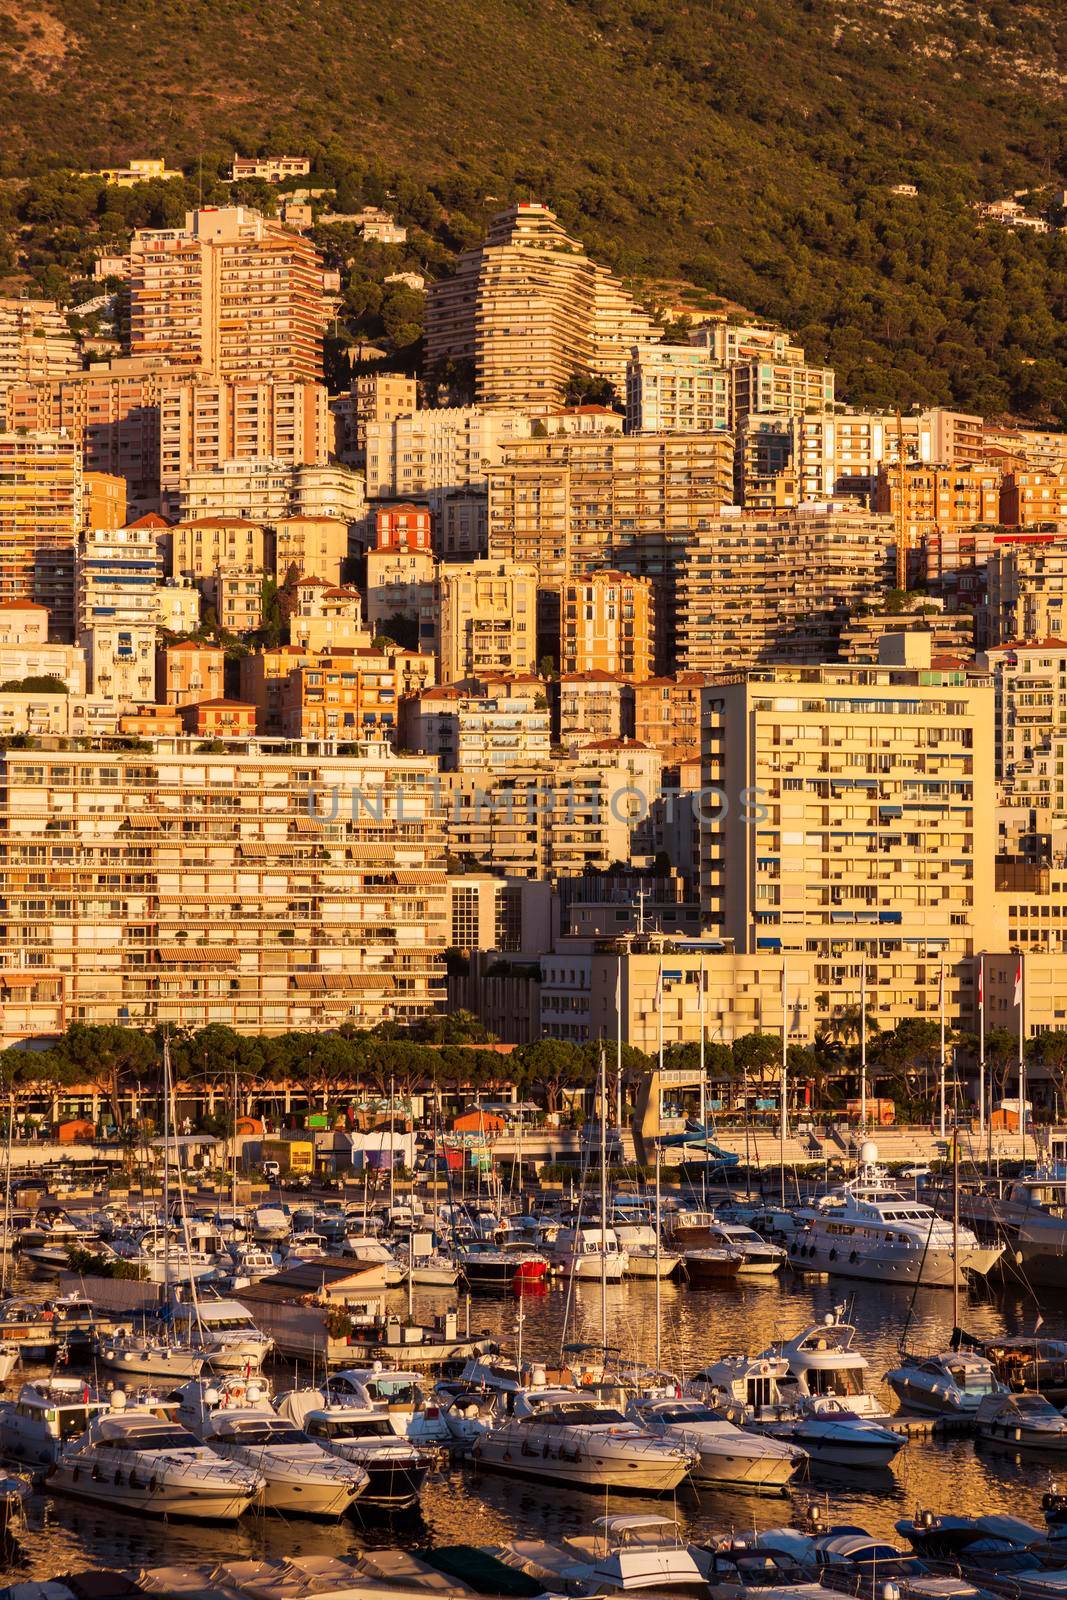 Sunrise in Monaco by benkrut